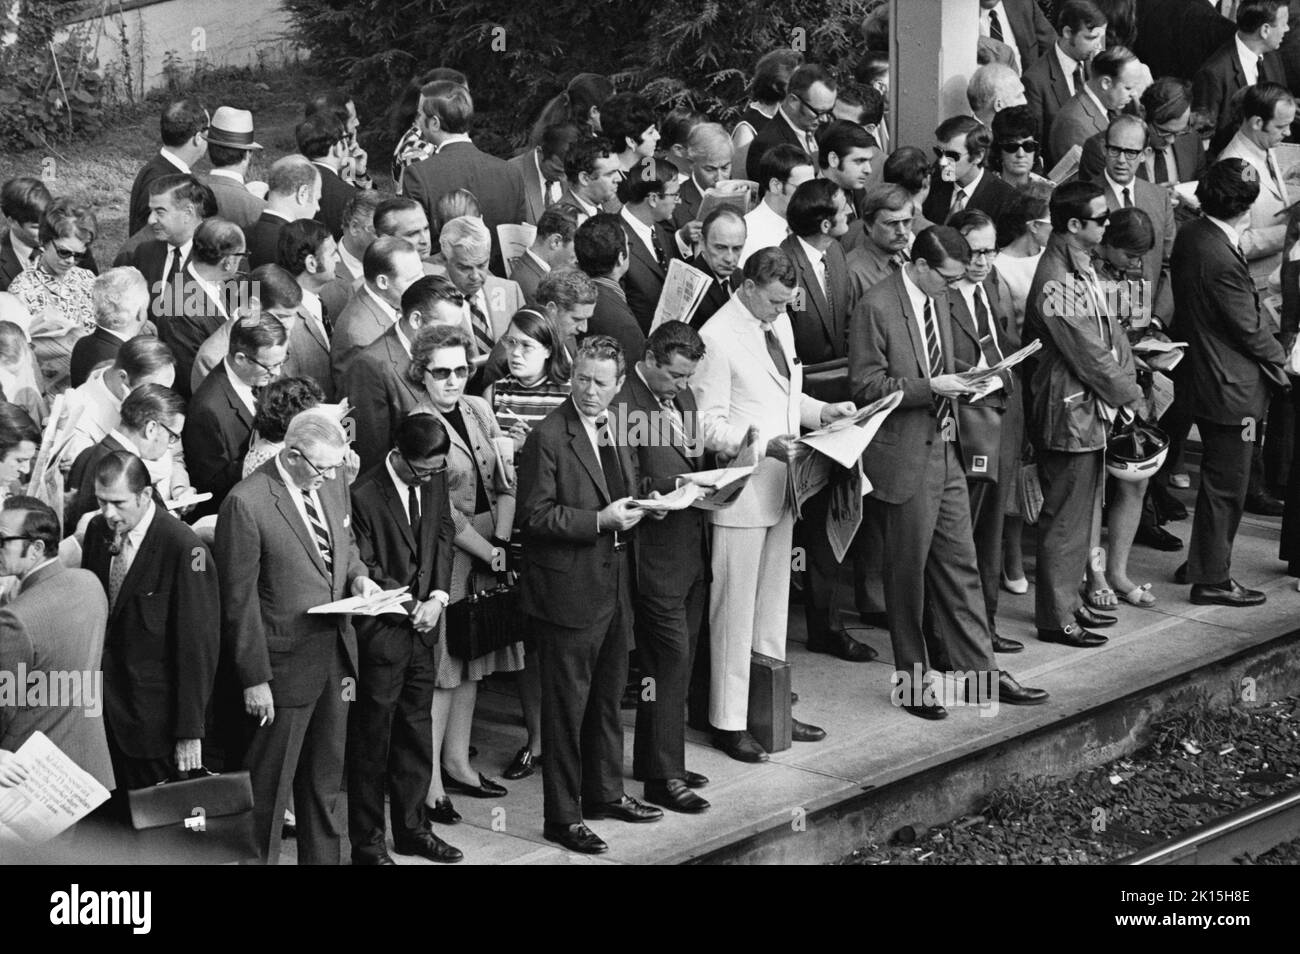 Penn Central Railway commutters in attesa su una piattaforma affollata a Scarsdale, New York, circa 1976. La maggior parte della folla è bianca e maschile, mentre le donne sono circa 1 nel 7 della forza lavoro di pendolarismo mostrato qui. Foto Stock